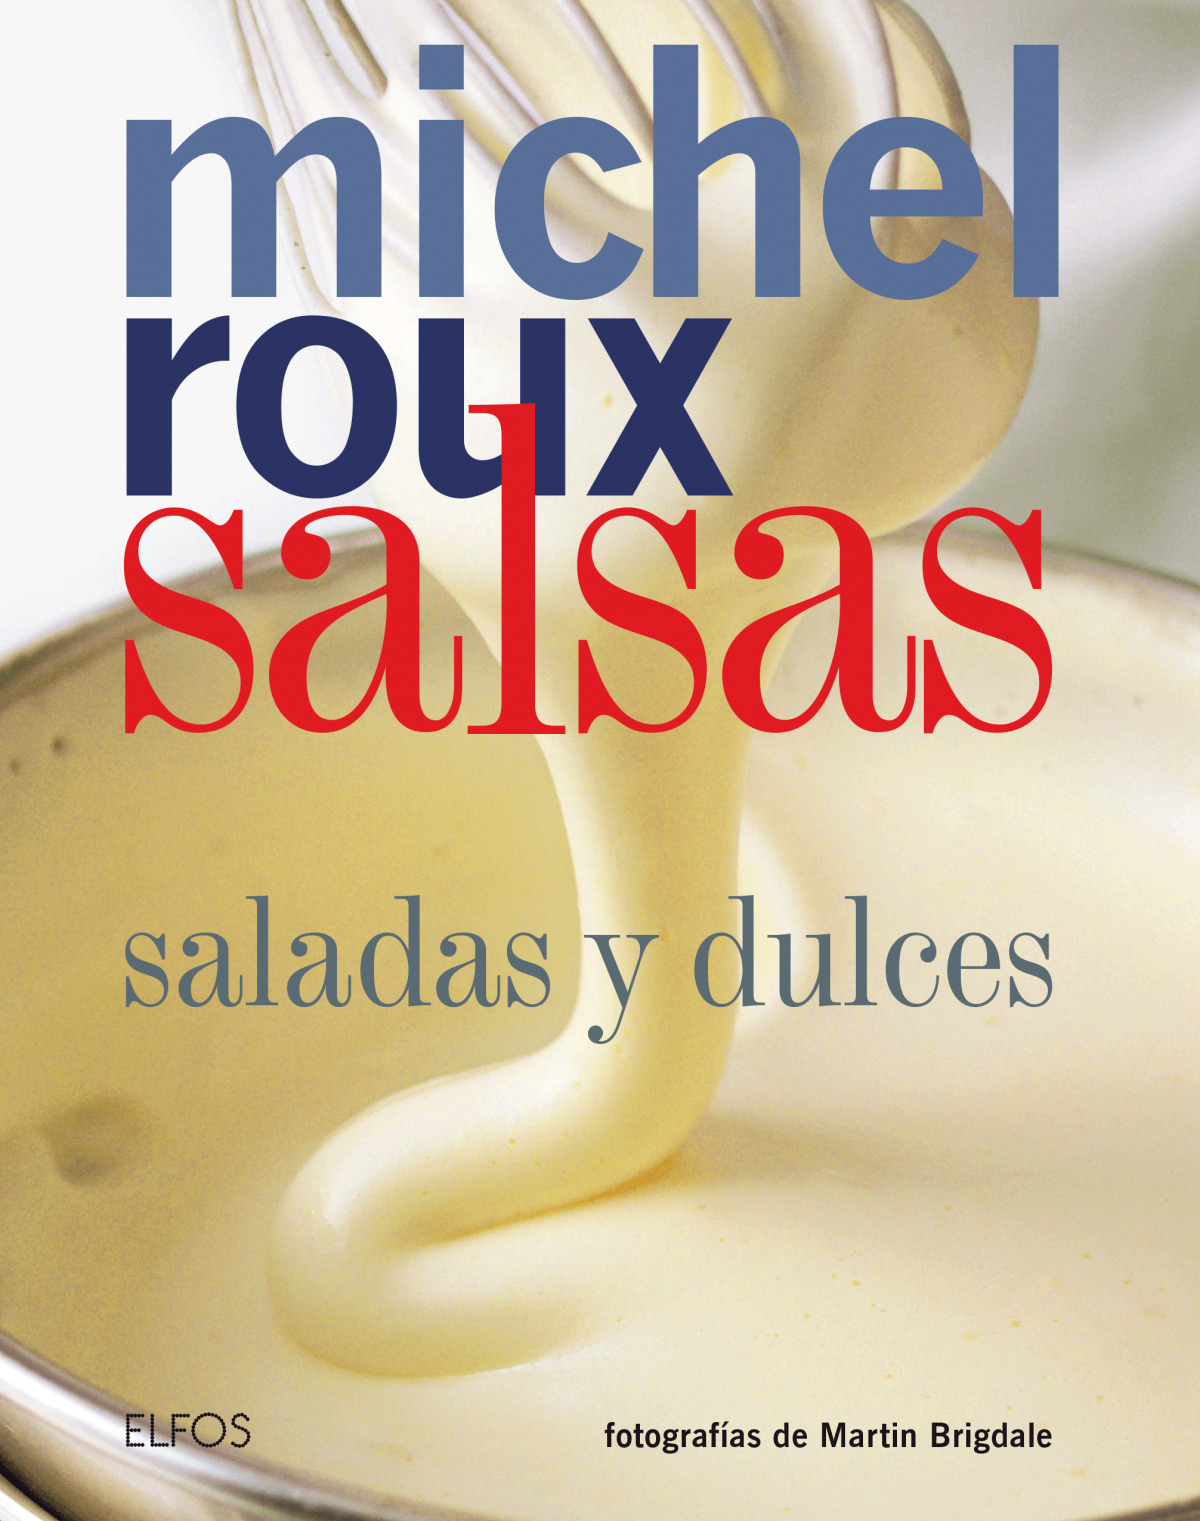 Salsas (roux) 2018 - Roux, Michel